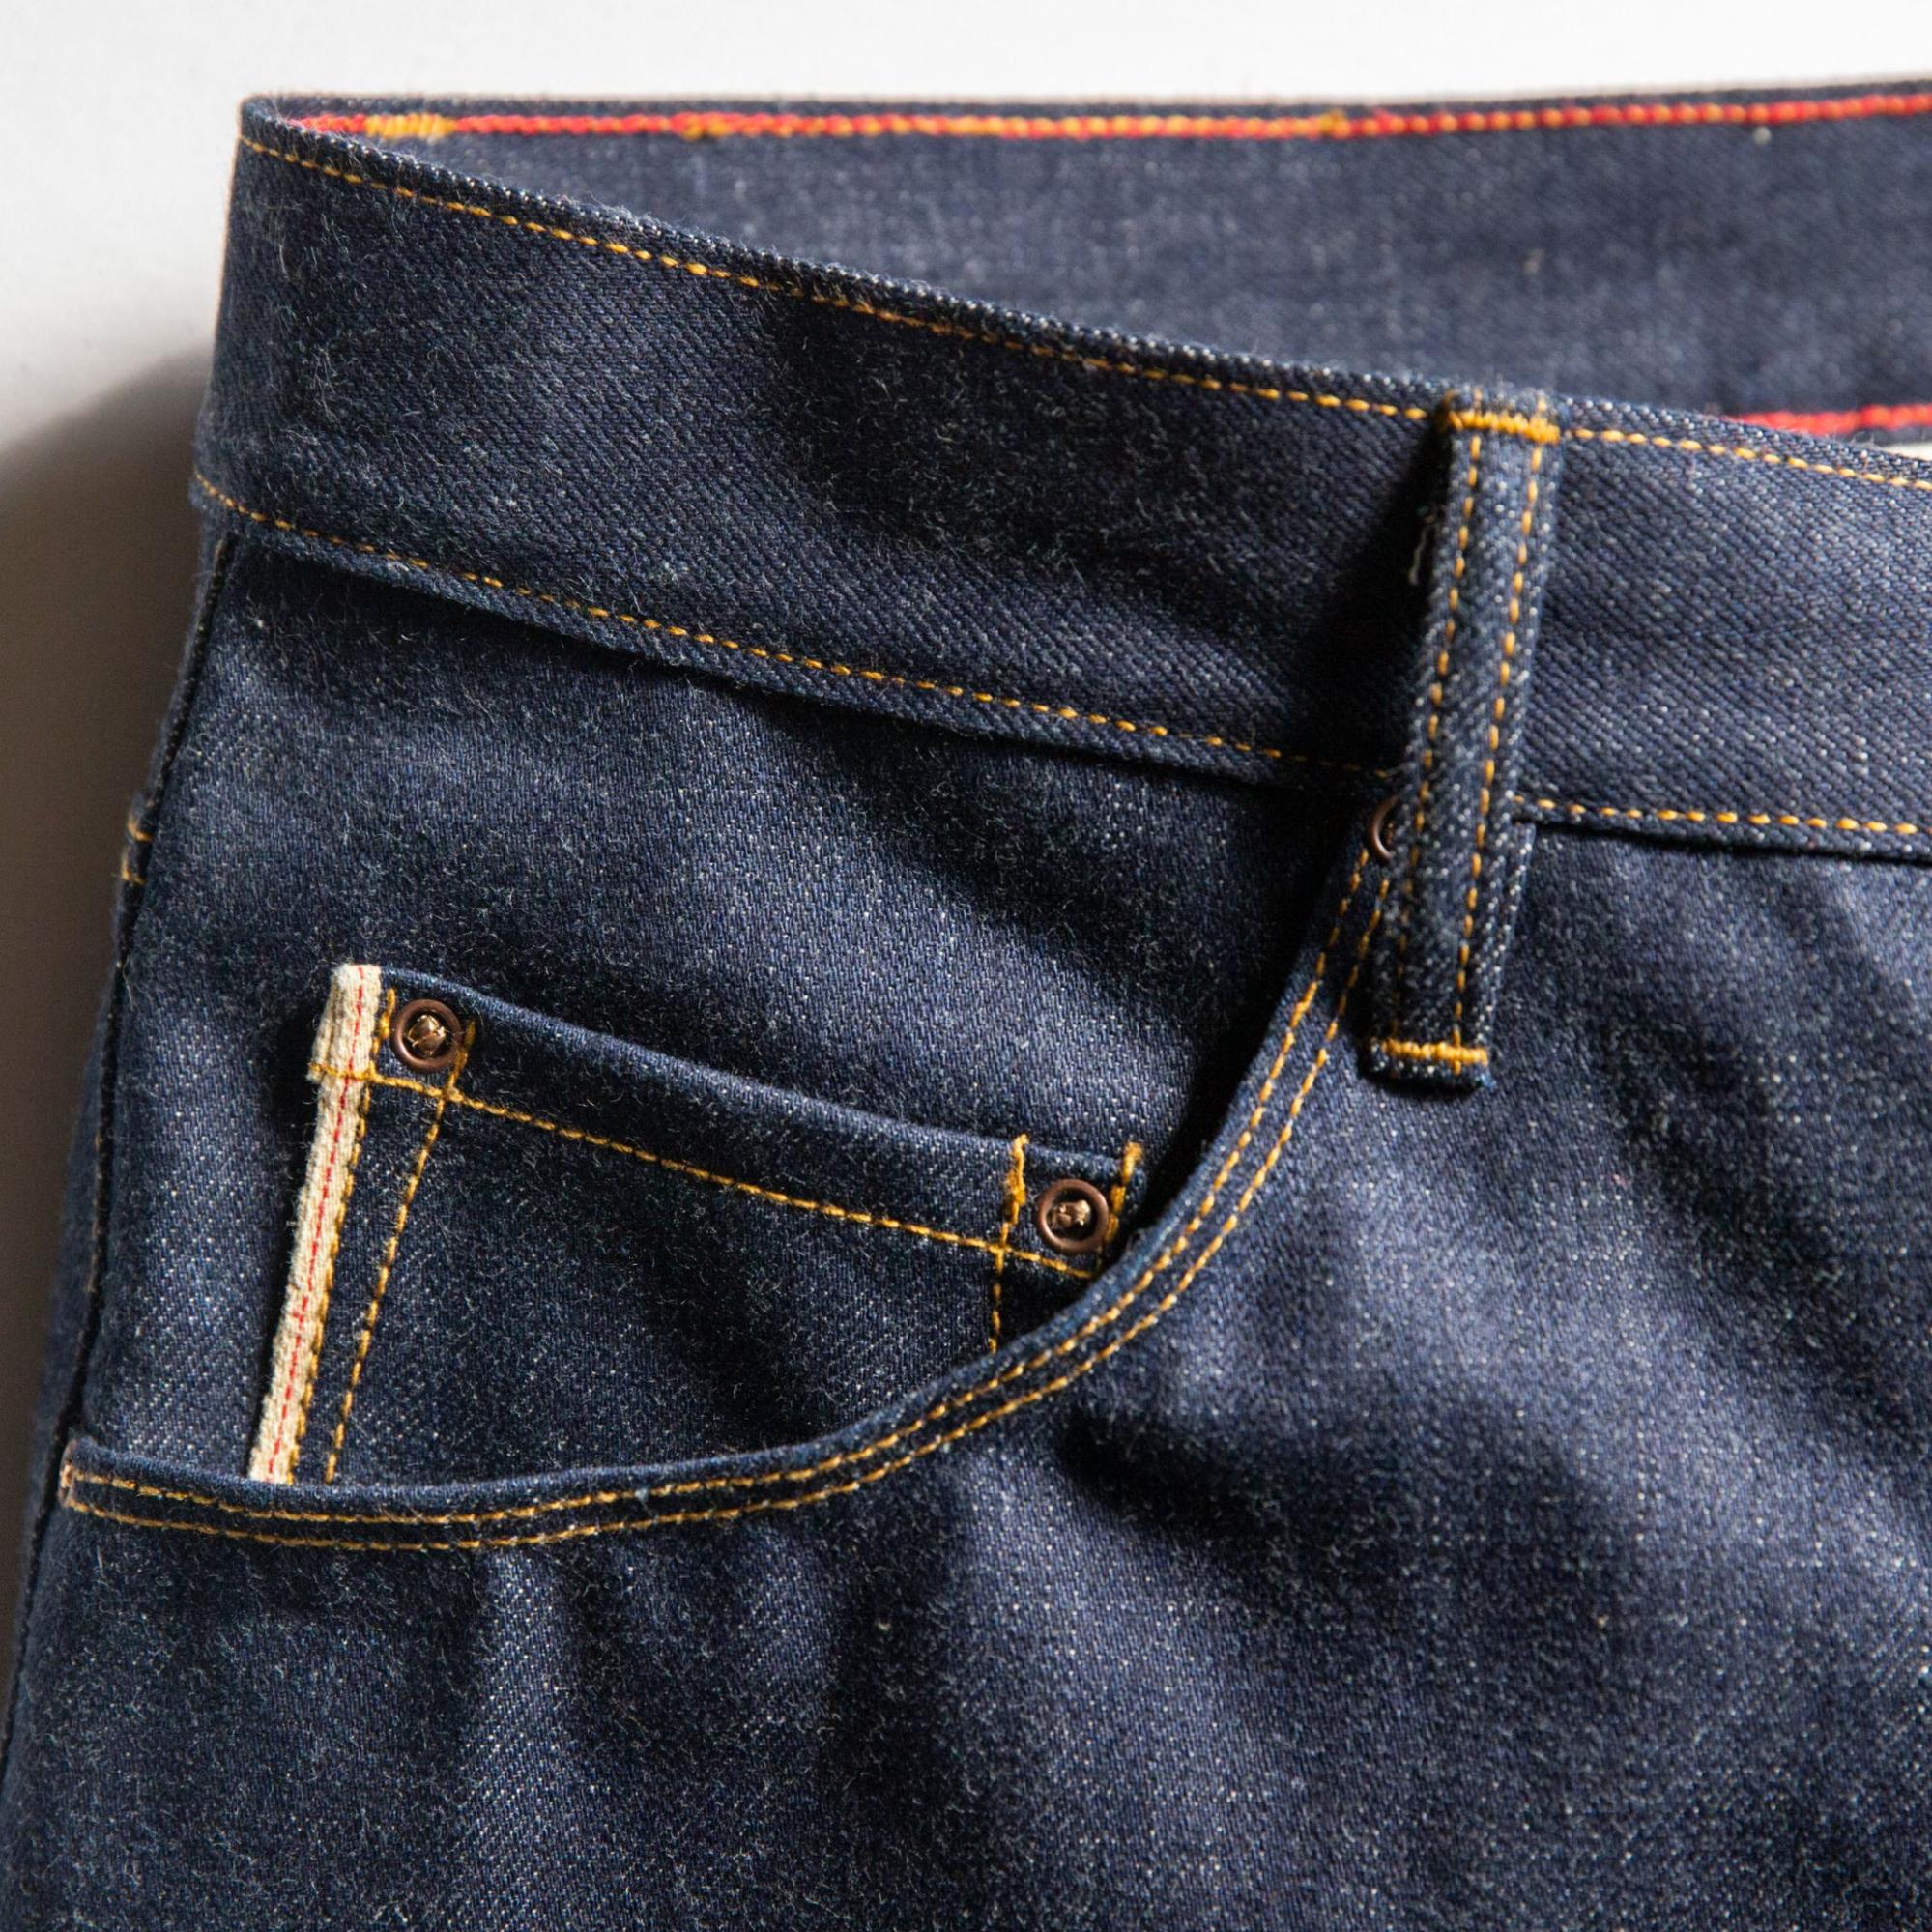 Unboxing & Fitting: WRANGLER Denim Jeans - YouTube